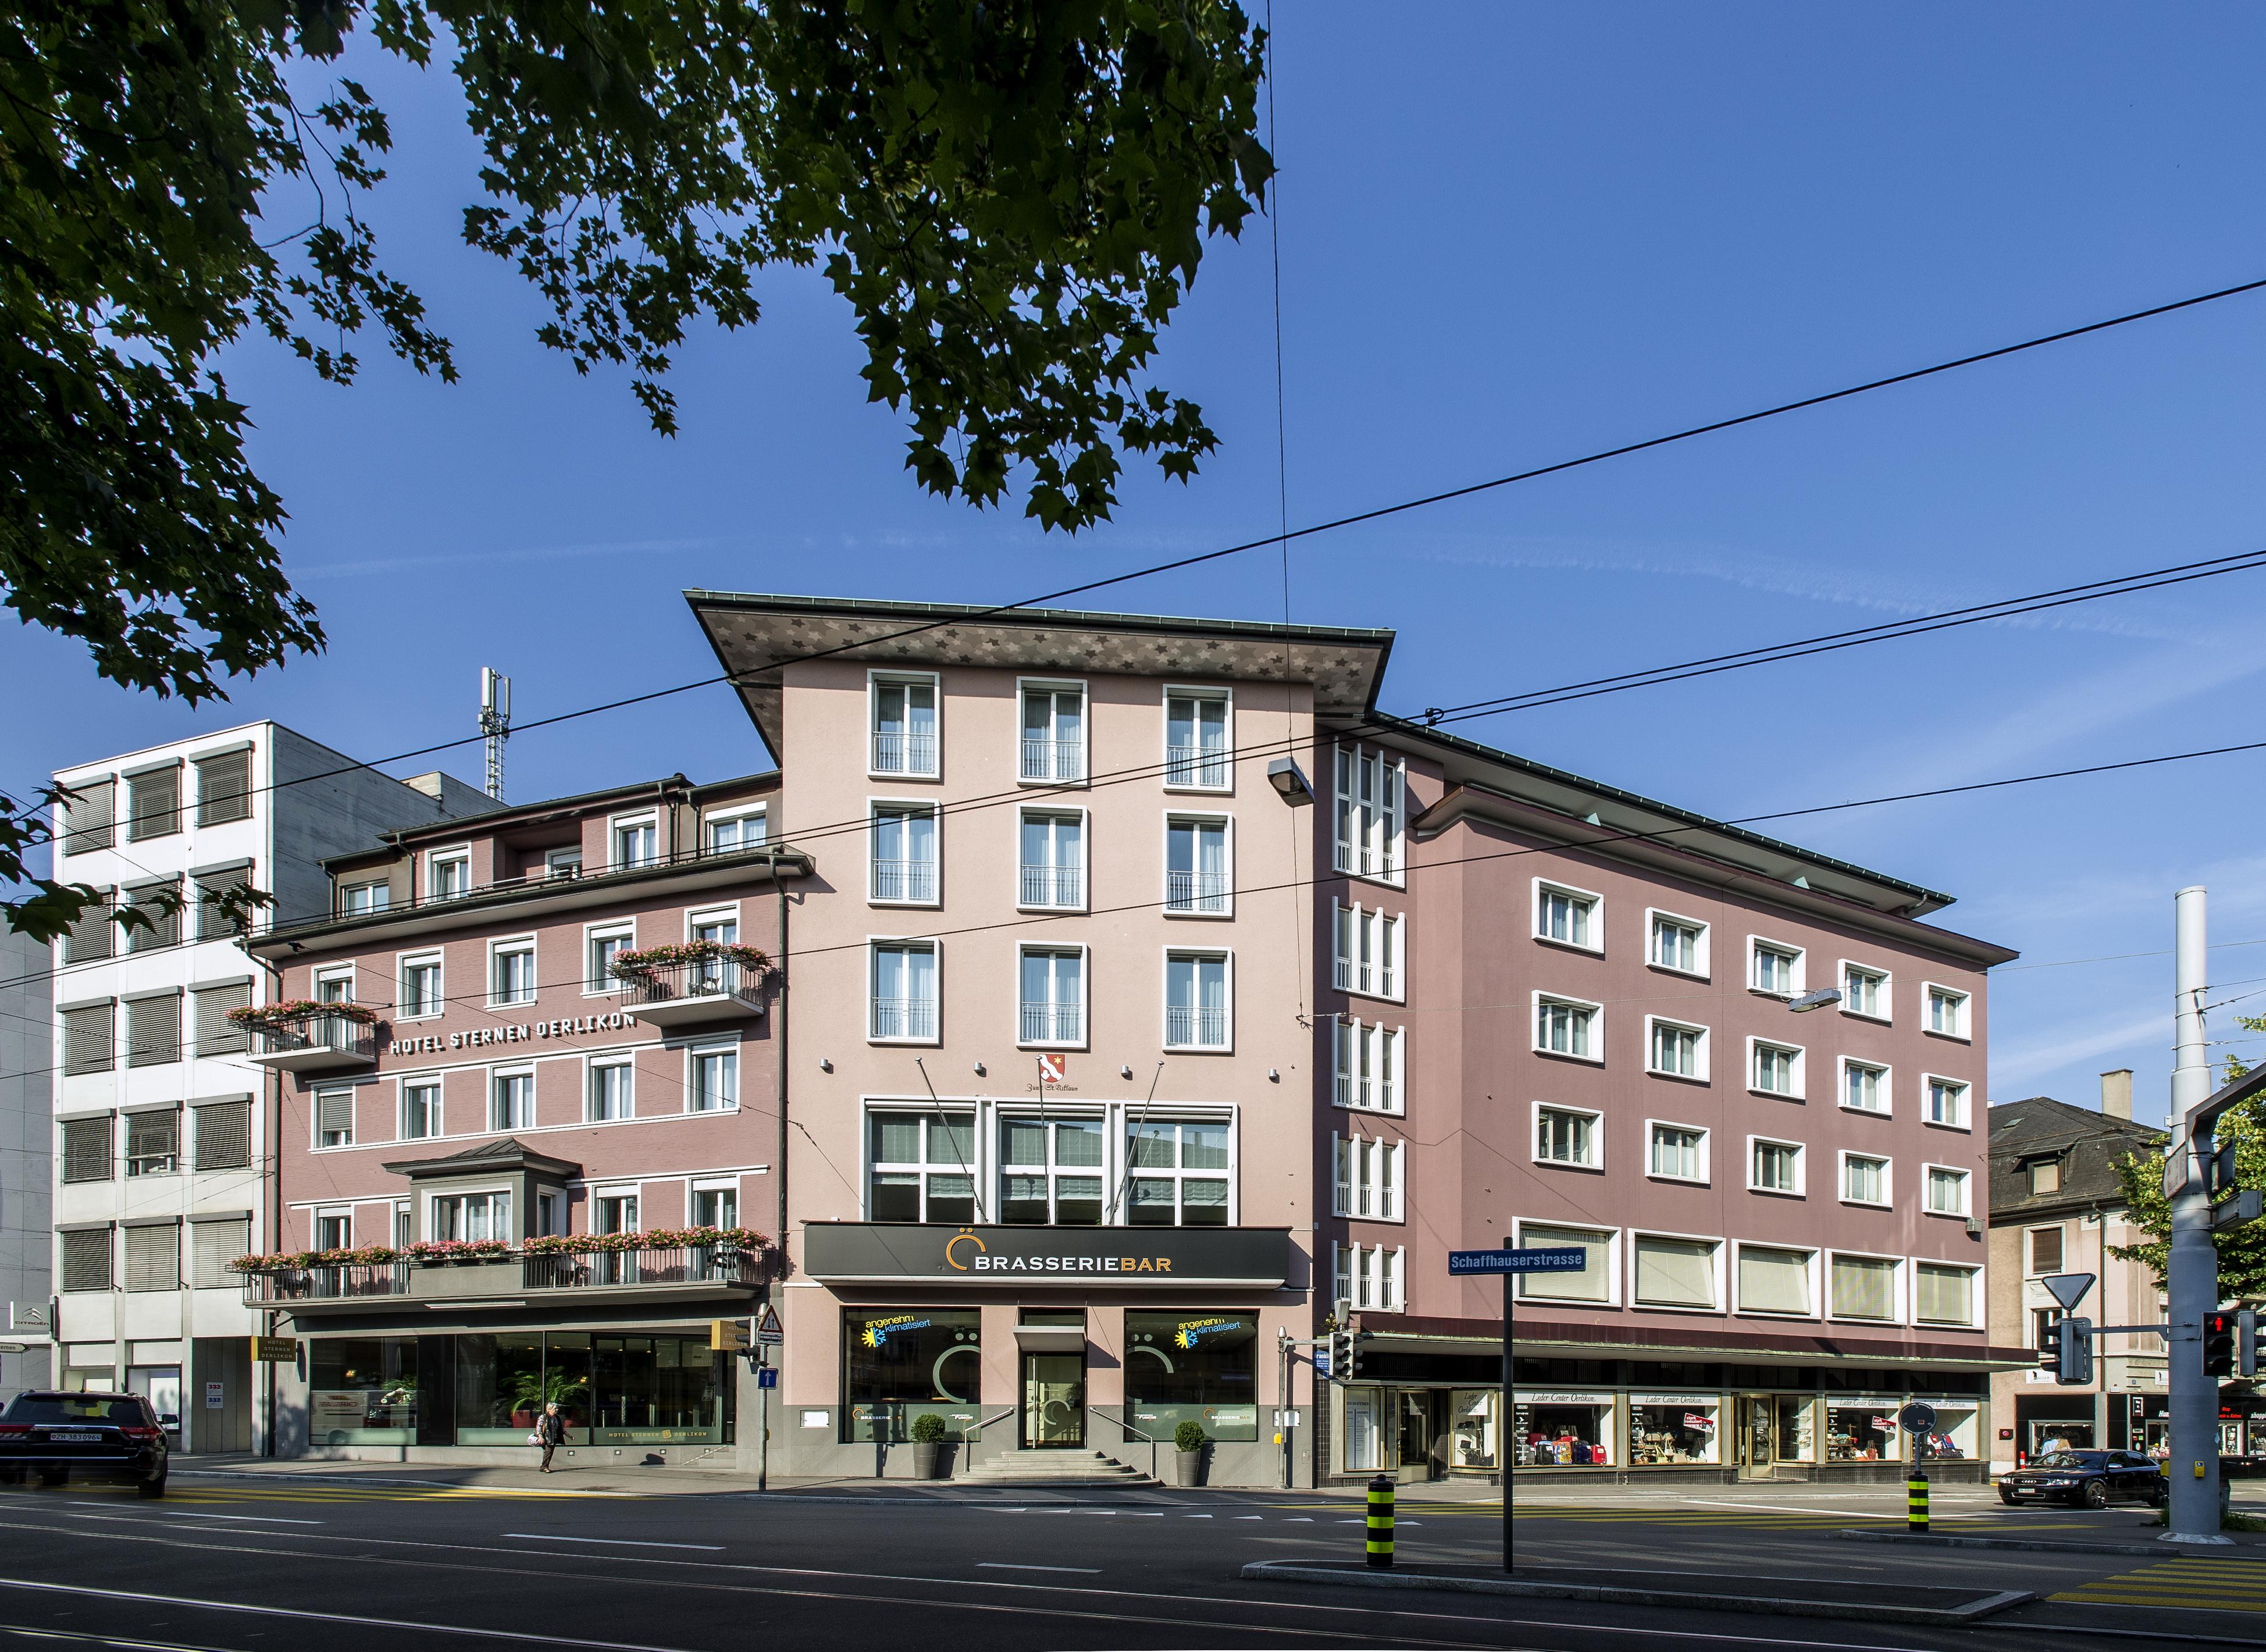 Hotel Sternen Oerlikon Zurich Exterior photo